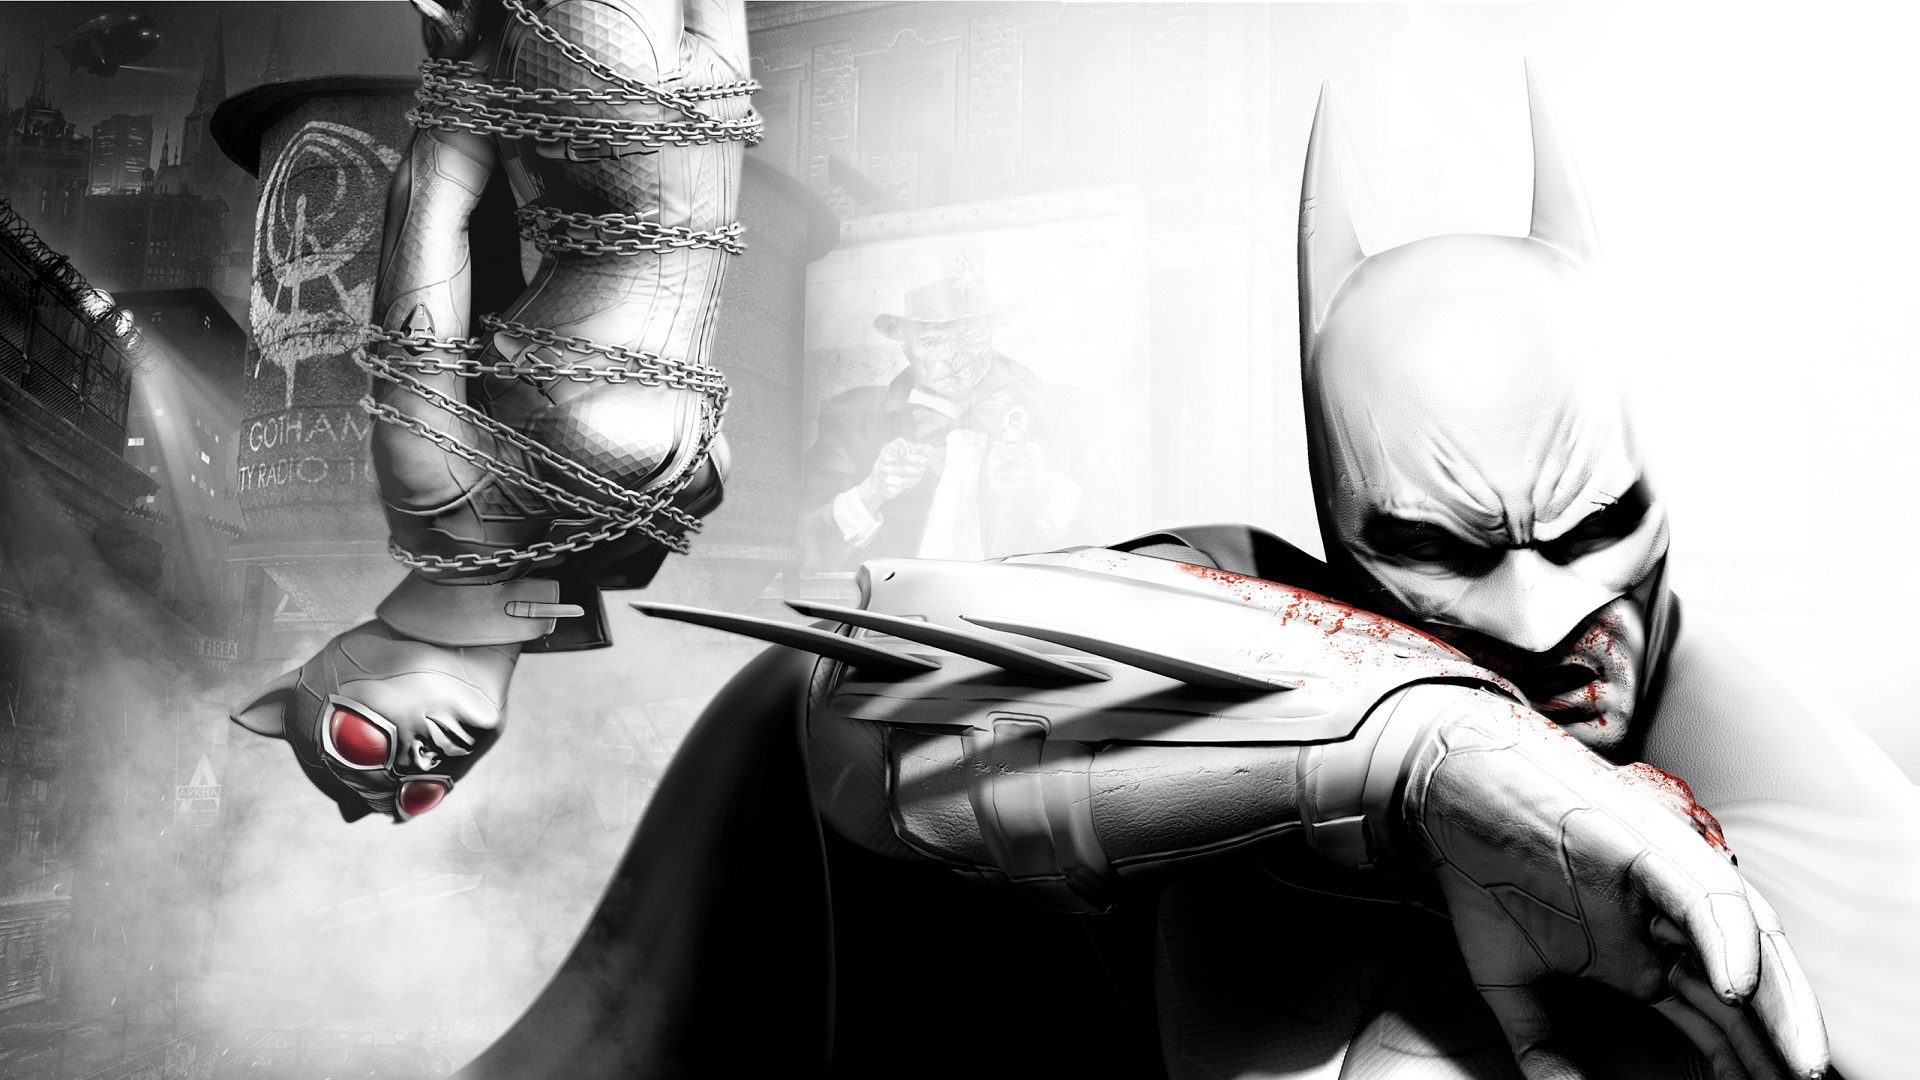 Juega con este personaje de Marvel en Batman Arkham City - Generacion Xbox